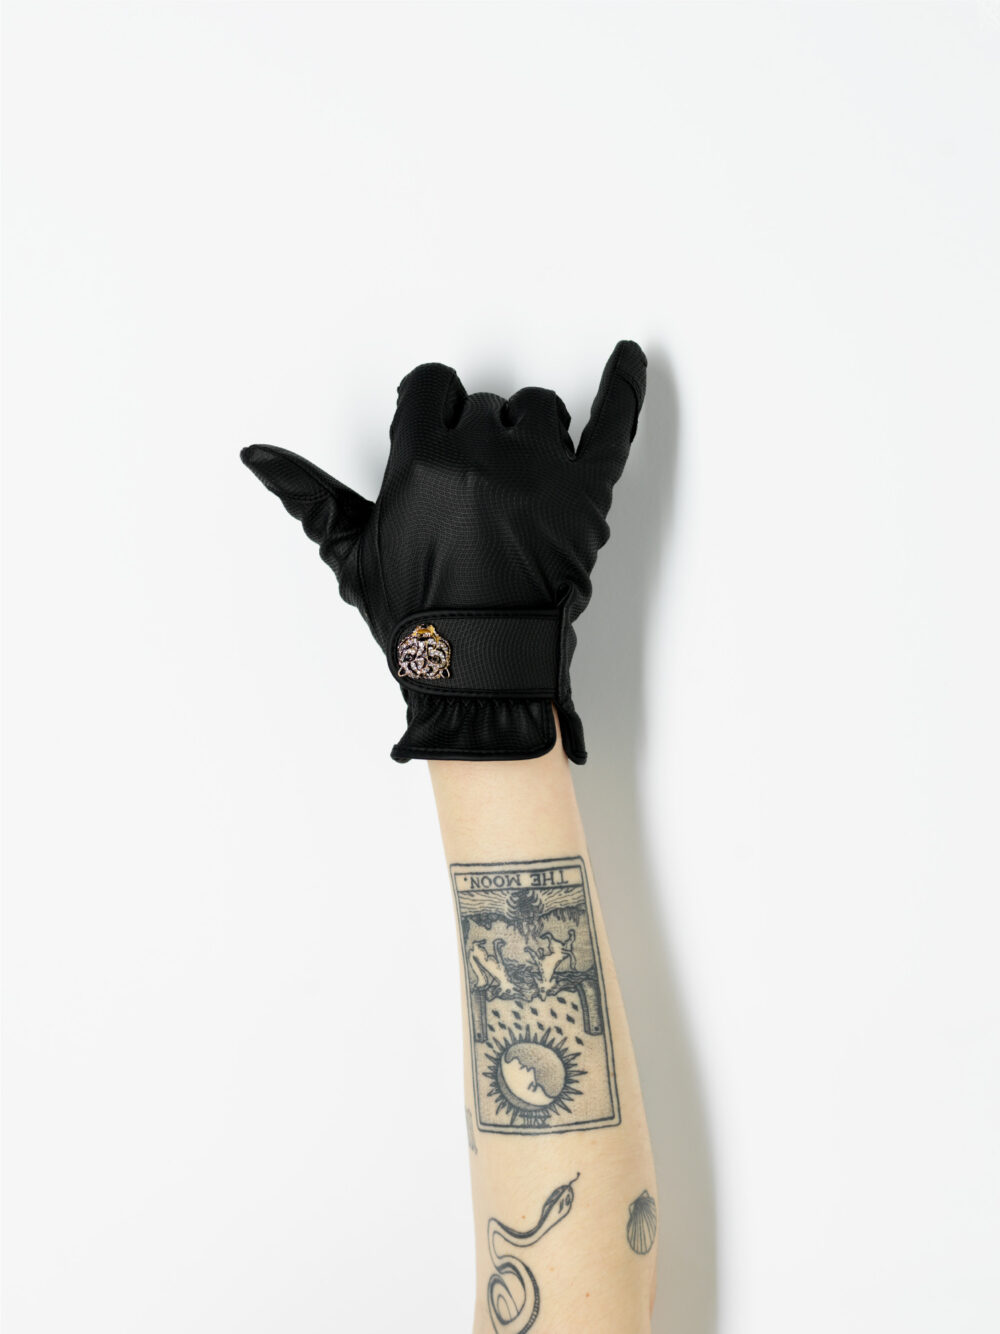 black gardening glove